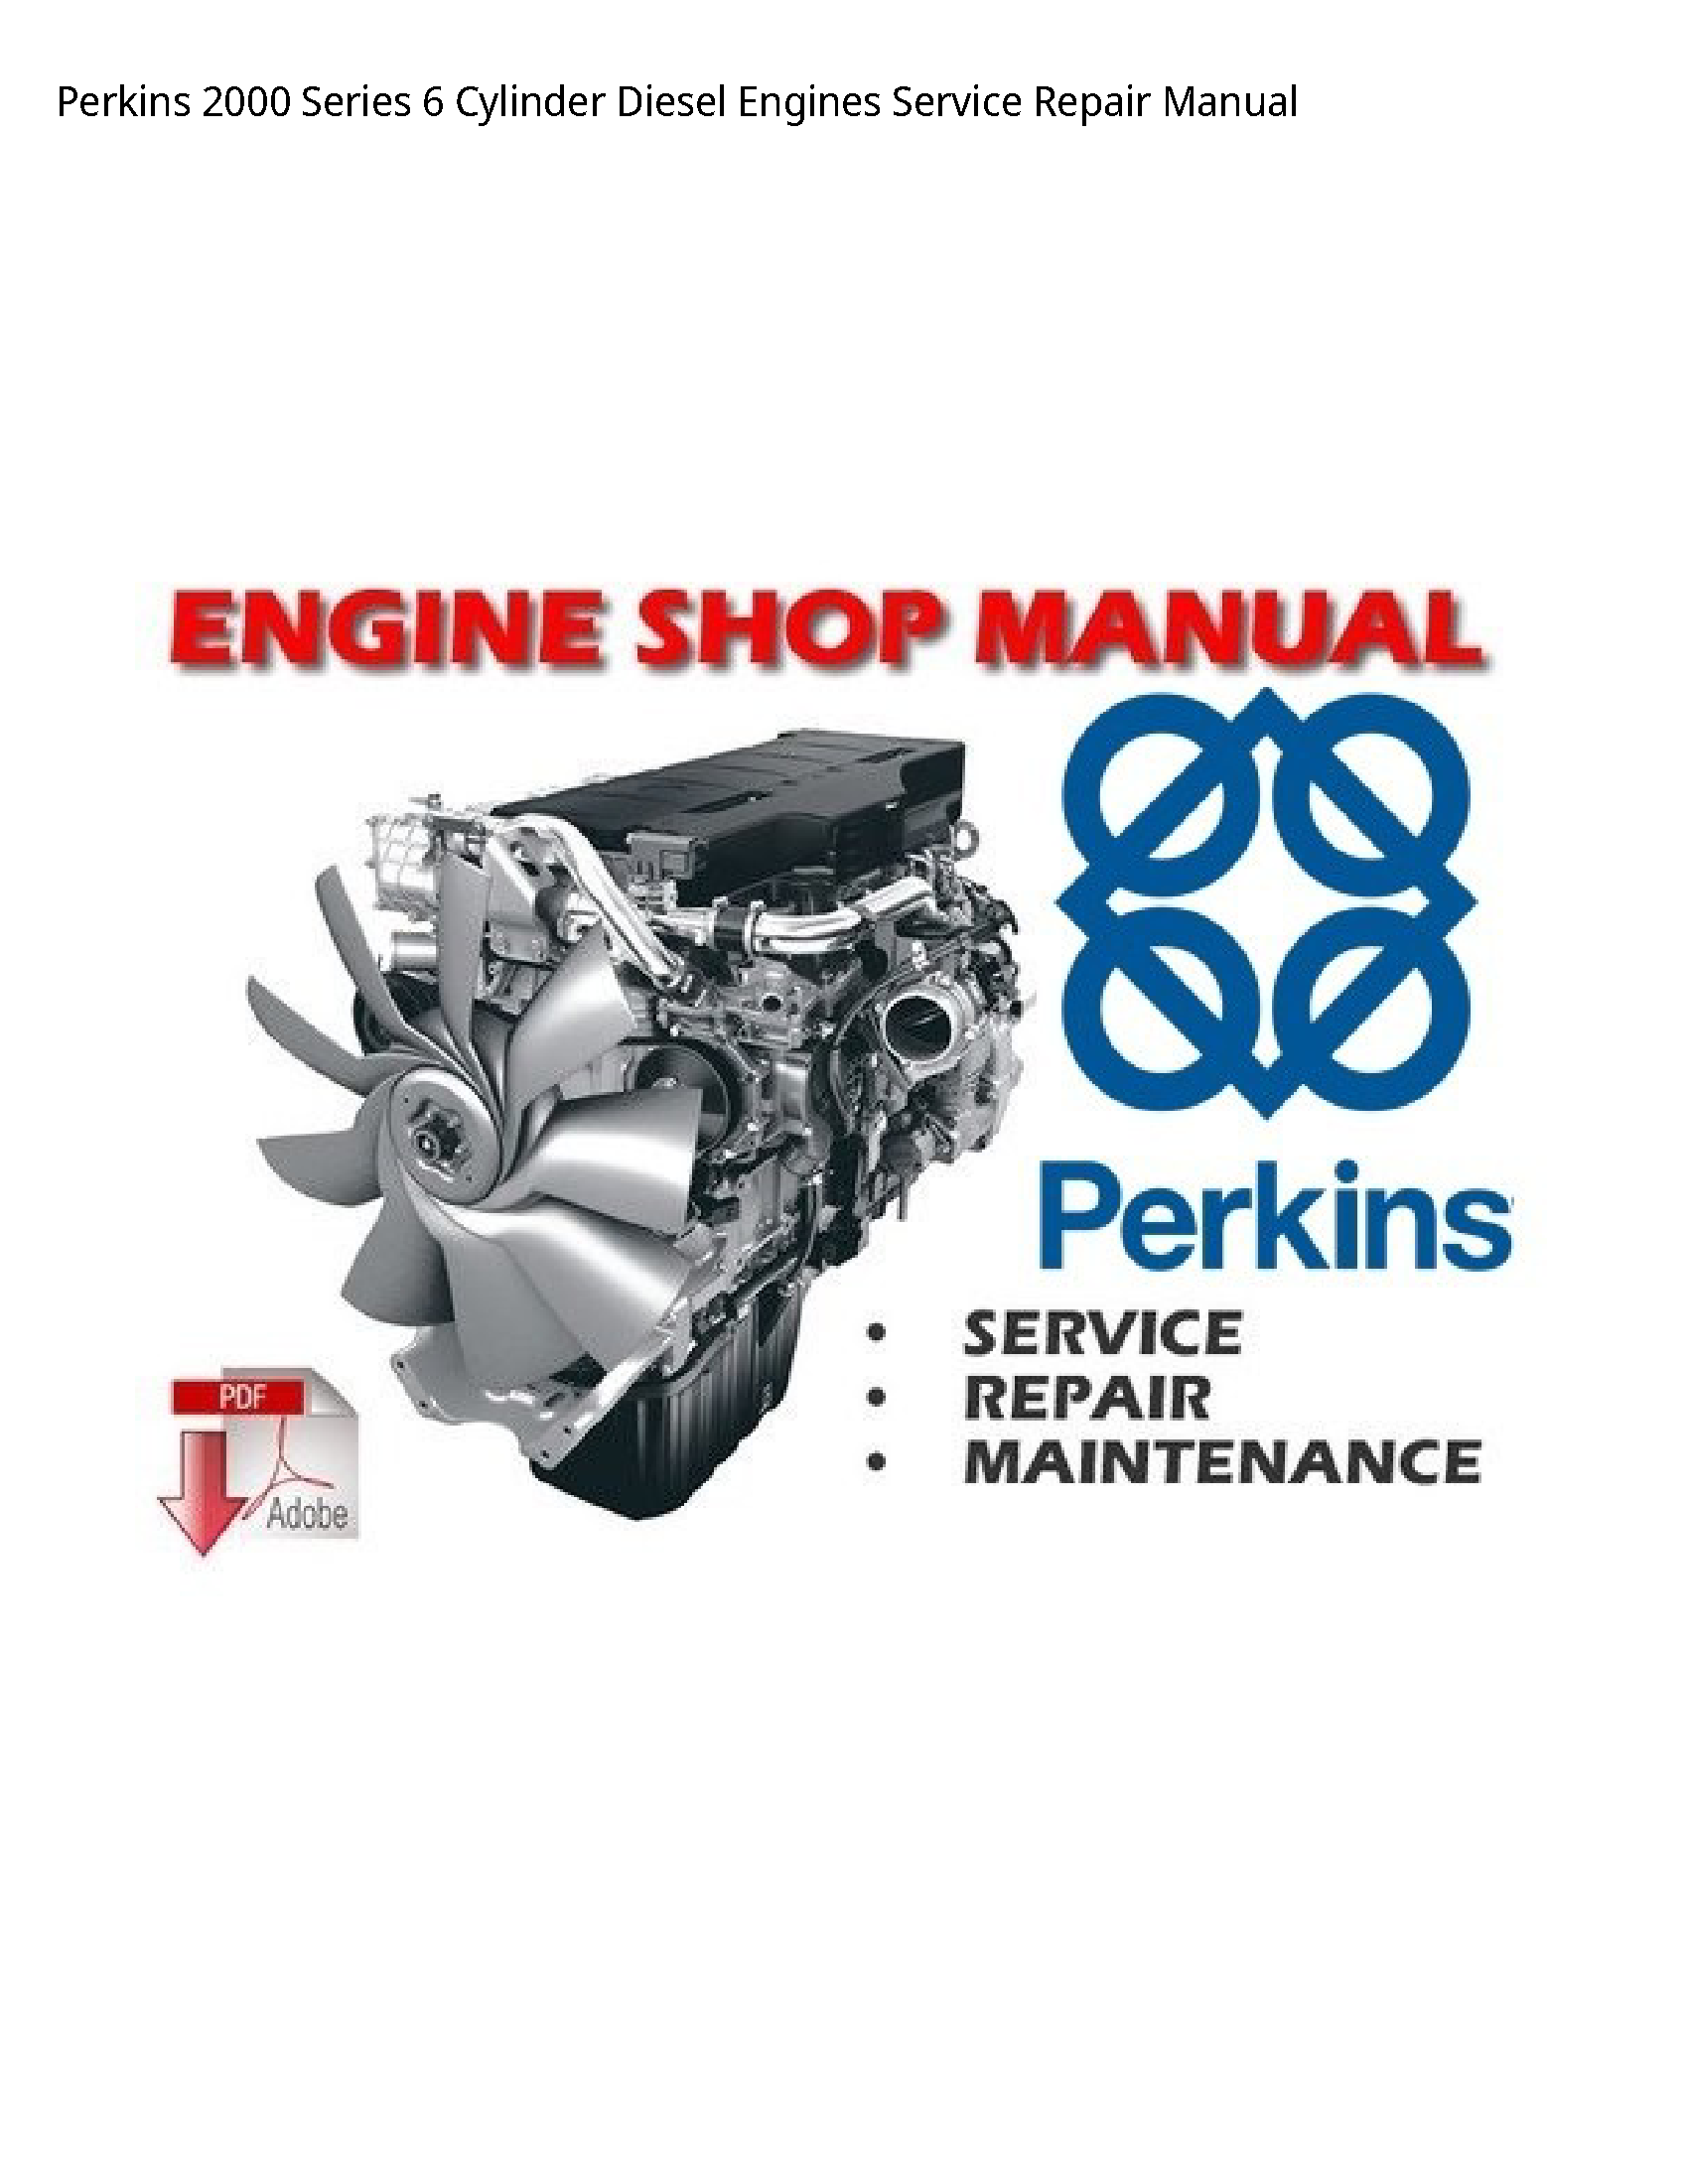 Perkins 2000 Series Cylinder Diesel Engines manual